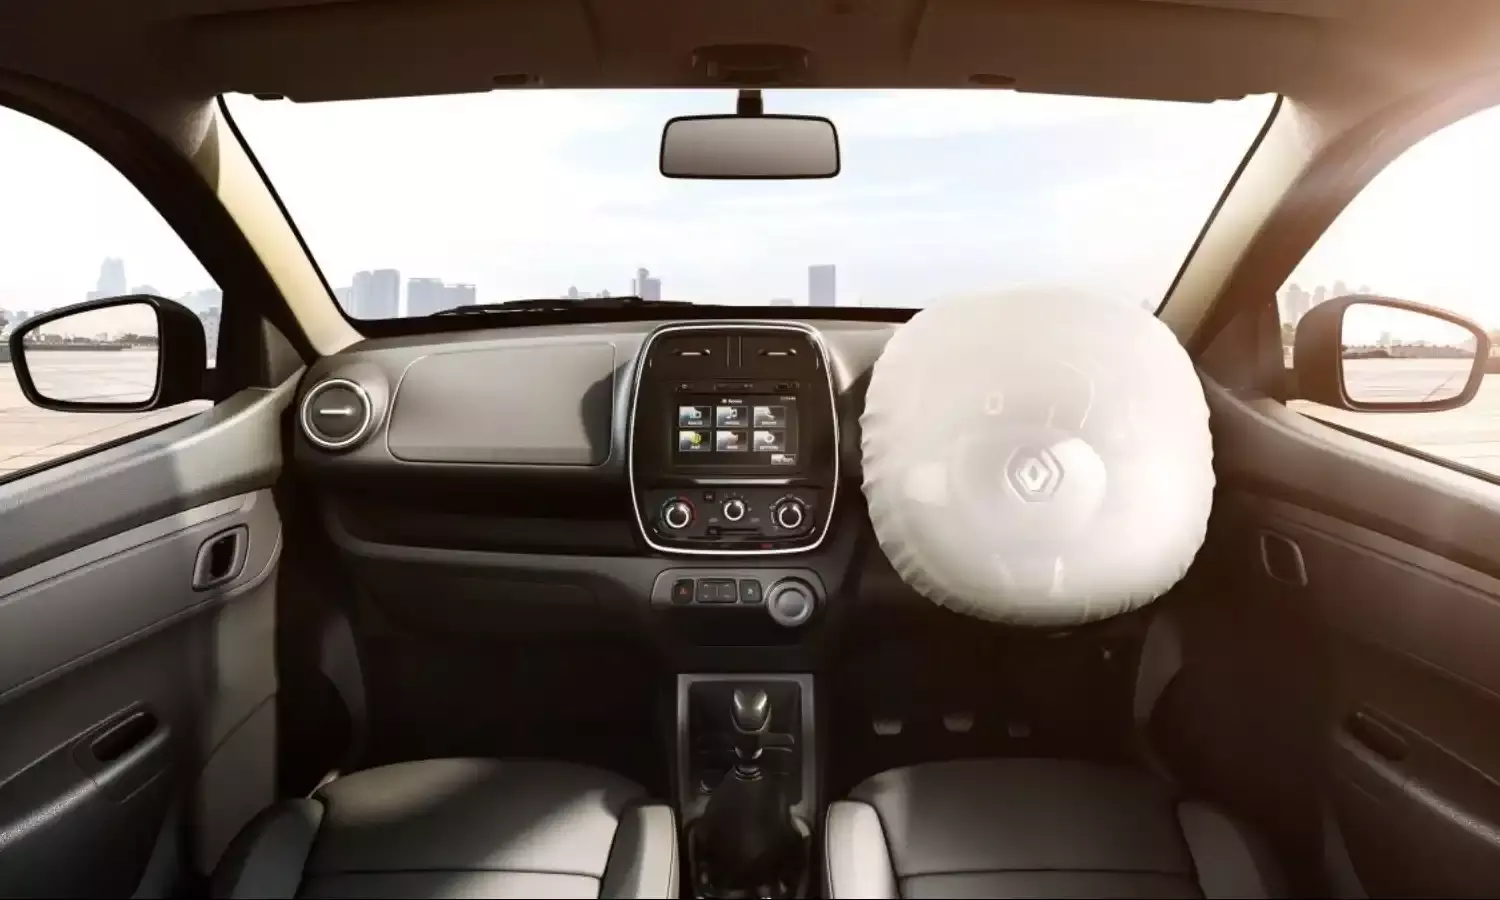 airbag mandatory in Indian car